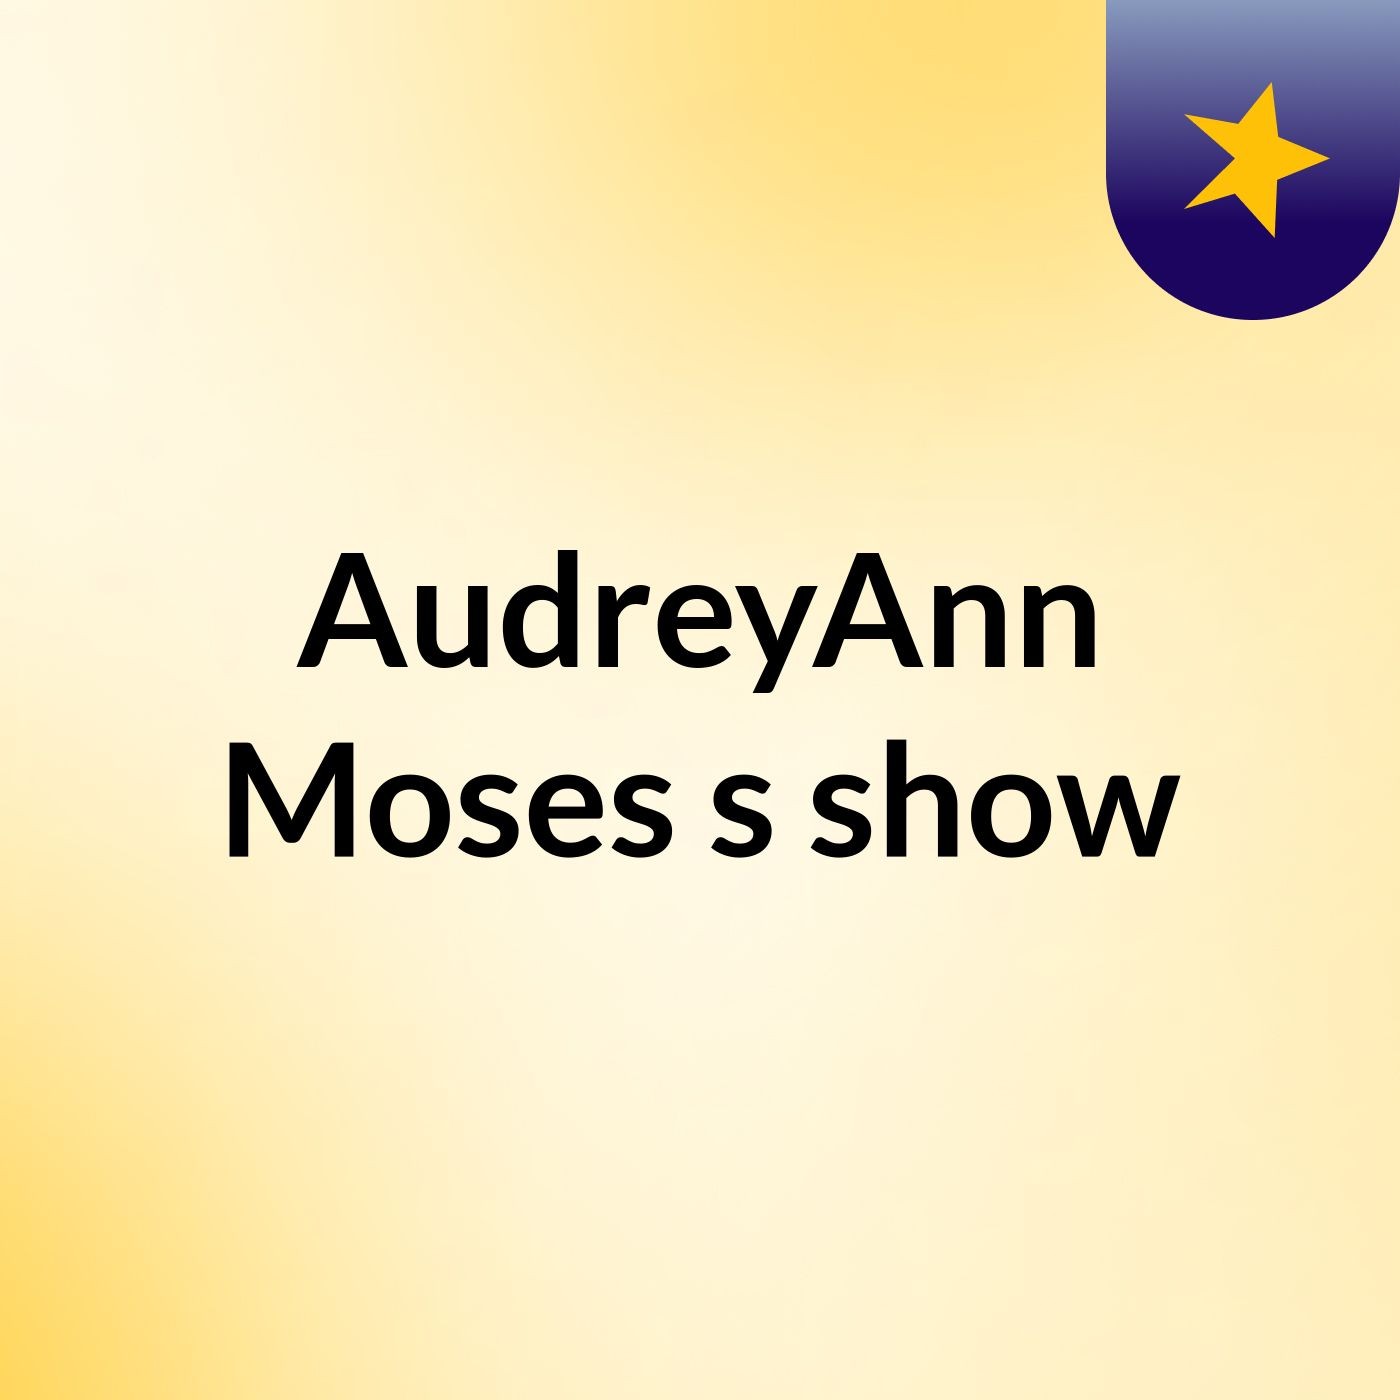 AudreyAnn Moses's show